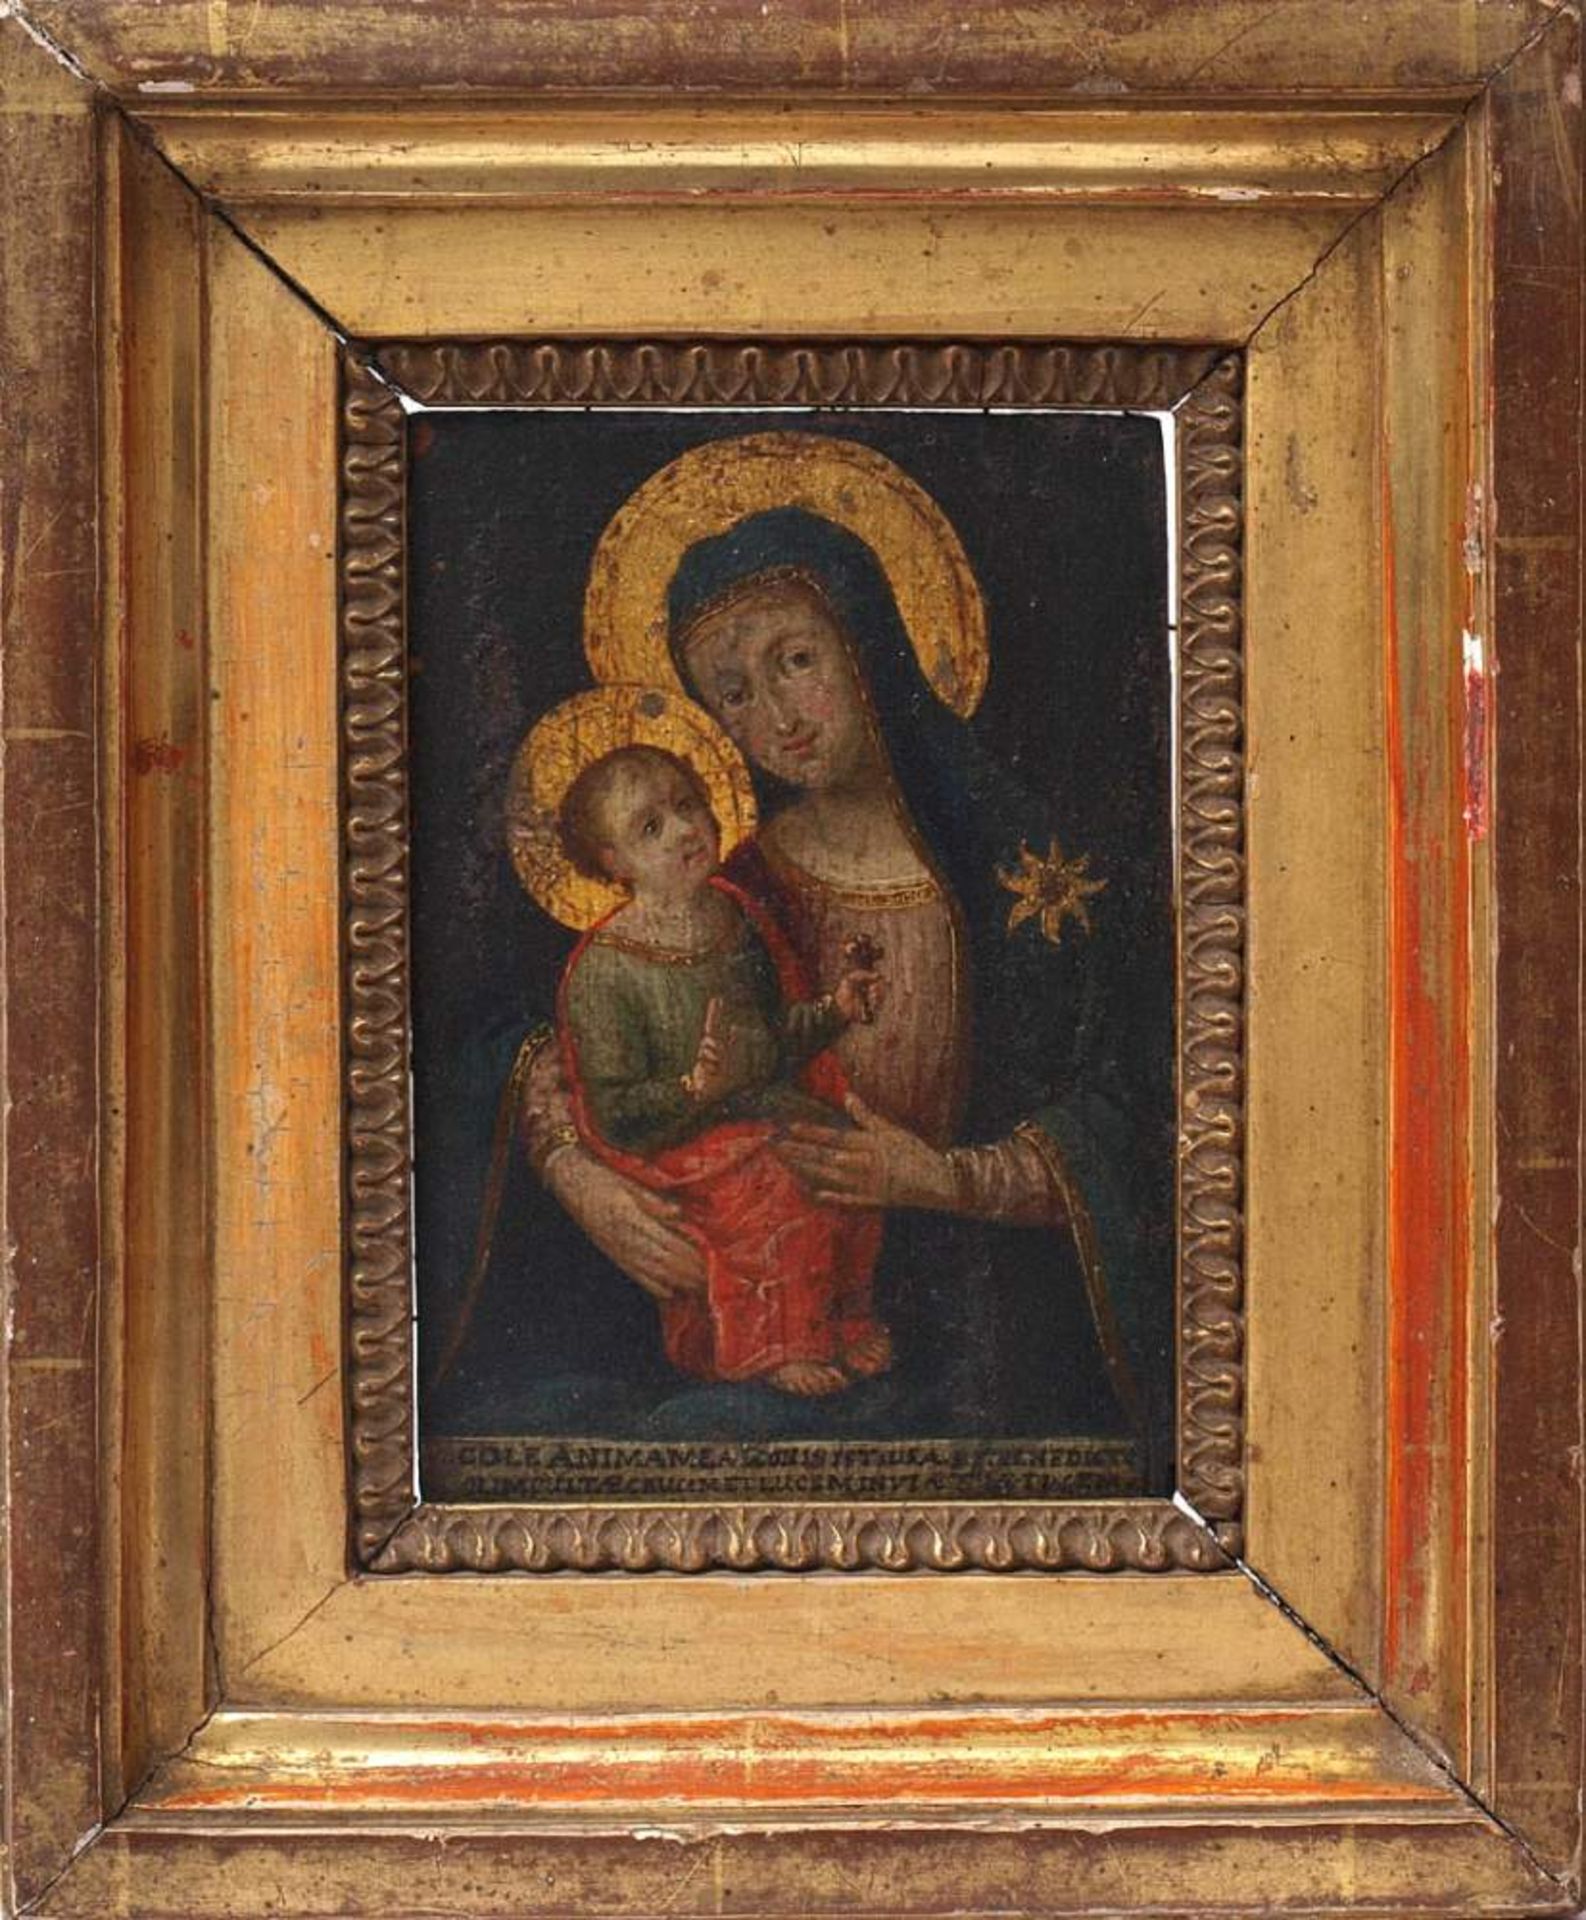 Madonnenbildnis, 18.Jhdt.Bildnis der sitzenden Madonna mit goldenem Heiligenschein, auf dem